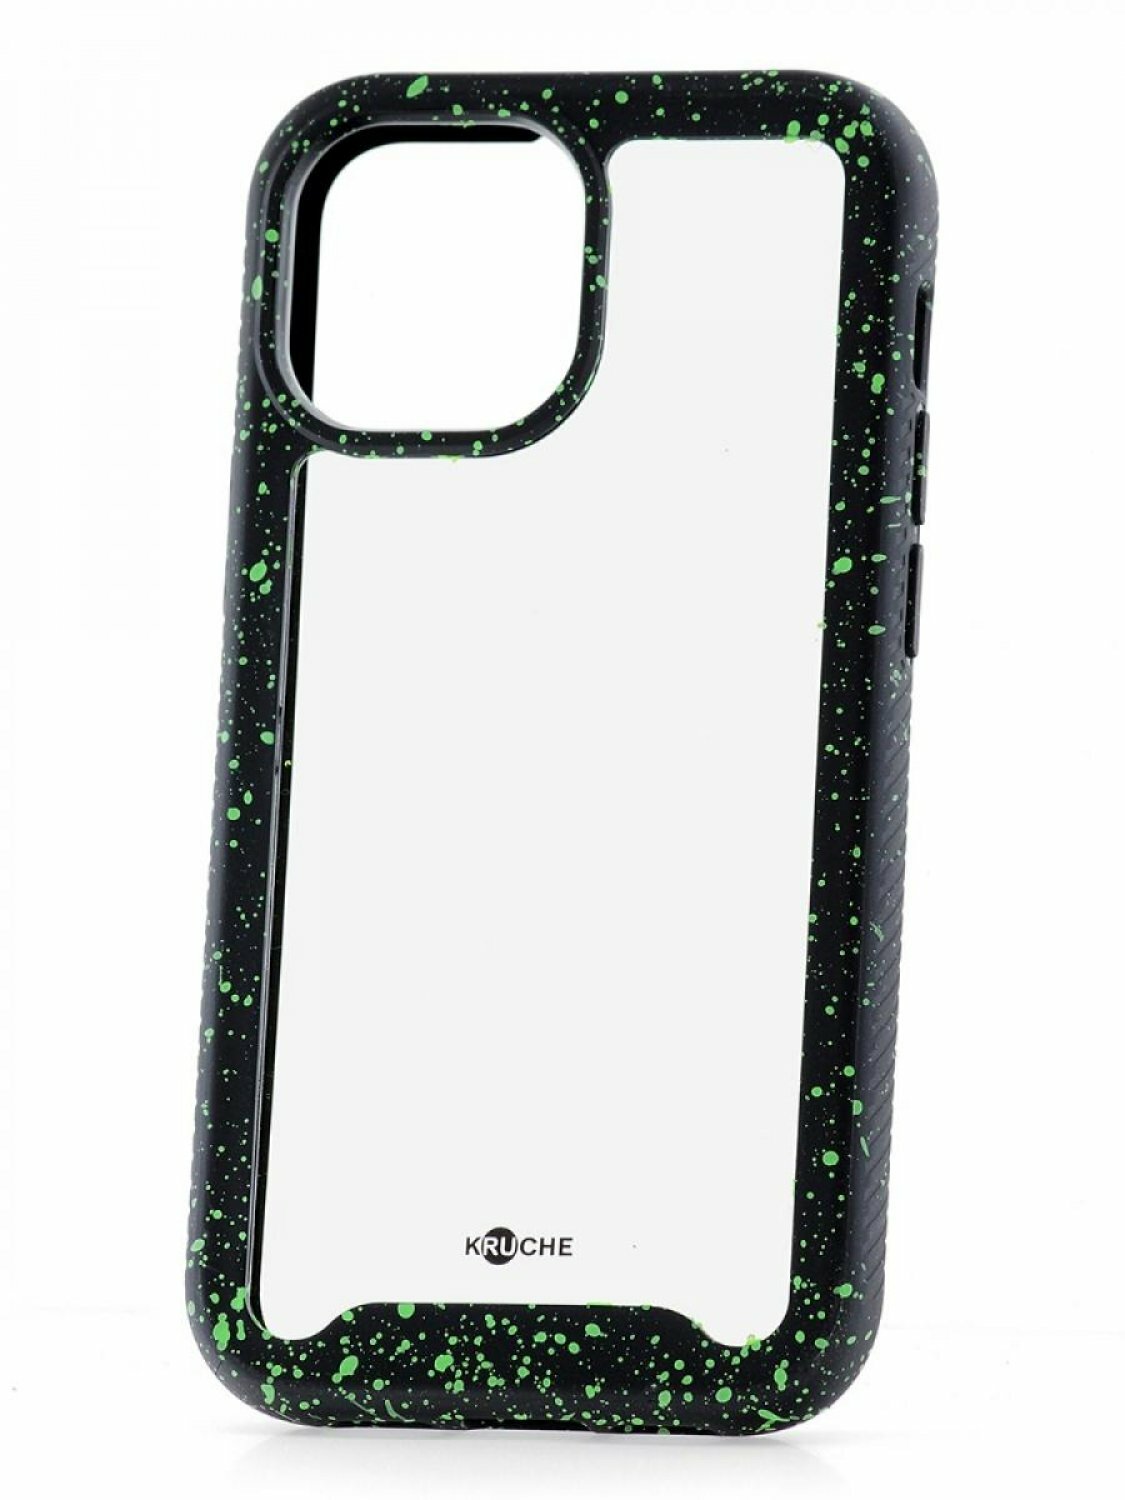 Чехол для iPhone 13 mini Kruche Armor Splash Black, противоударная накладка, защитный силиконовый бампер 360, прозрачный ударопрочный кейс, защита камеры